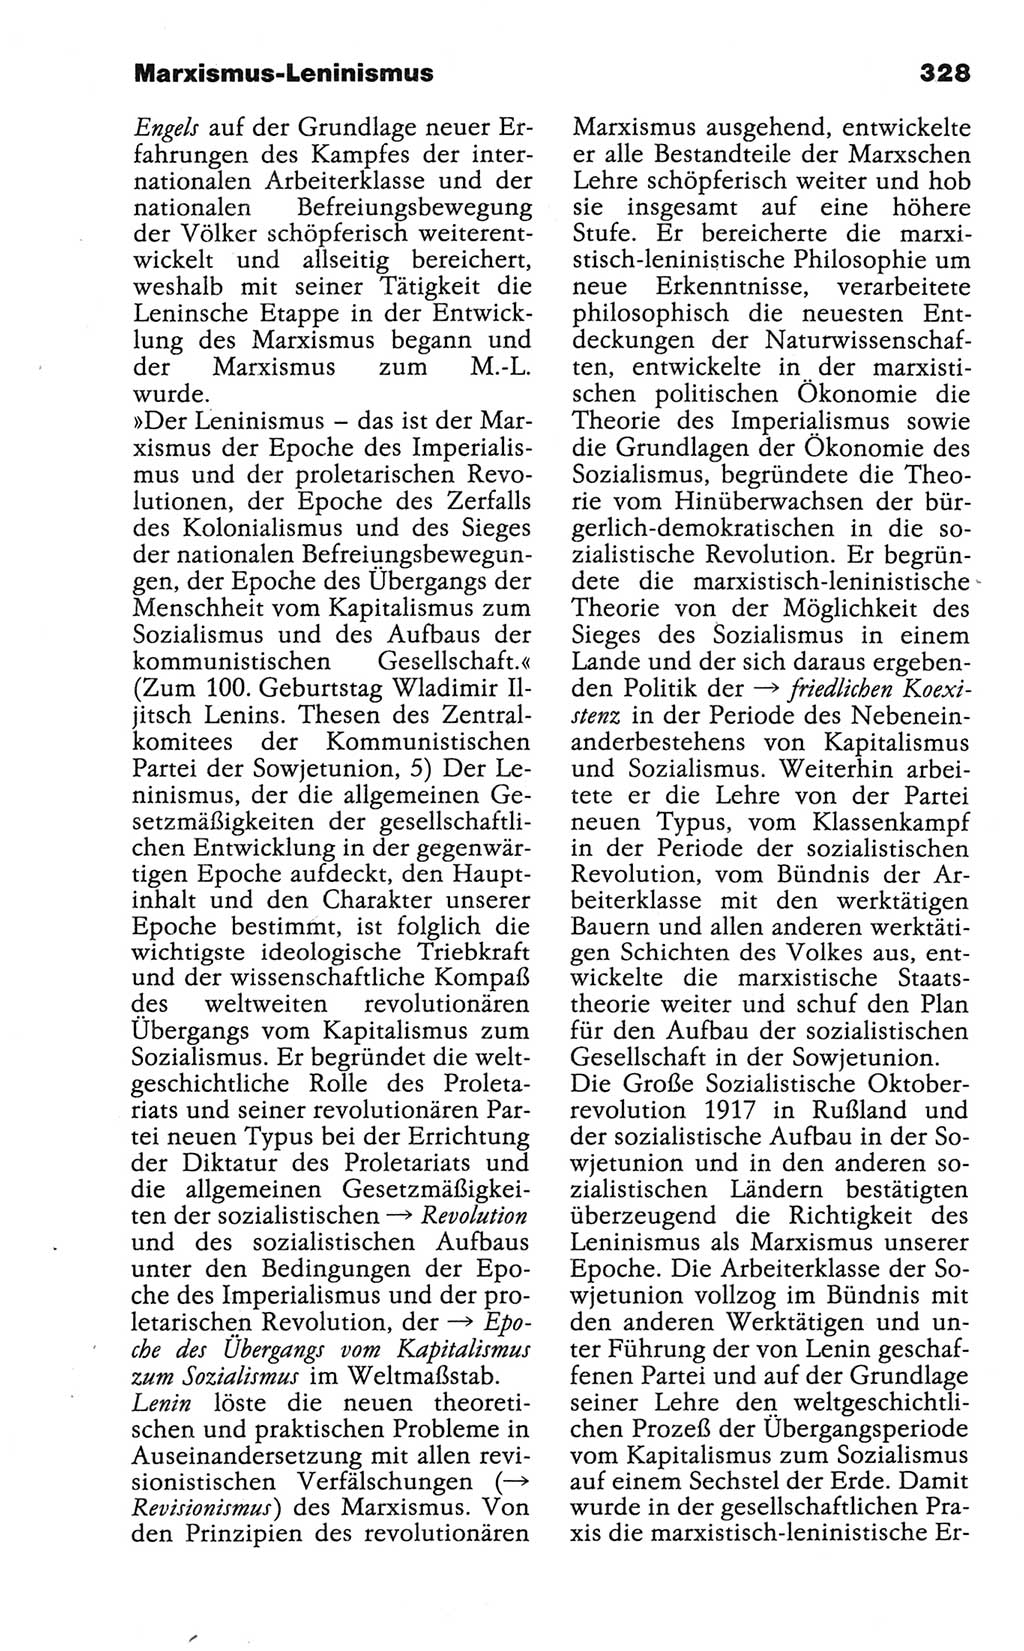 Wörterbuch der marxistisch-leninistischen Philosophie [Deutsche Demokratische Republik (DDR)] 1986, Seite 328 (Wb. ML Phil. DDR 1986, S. 328)